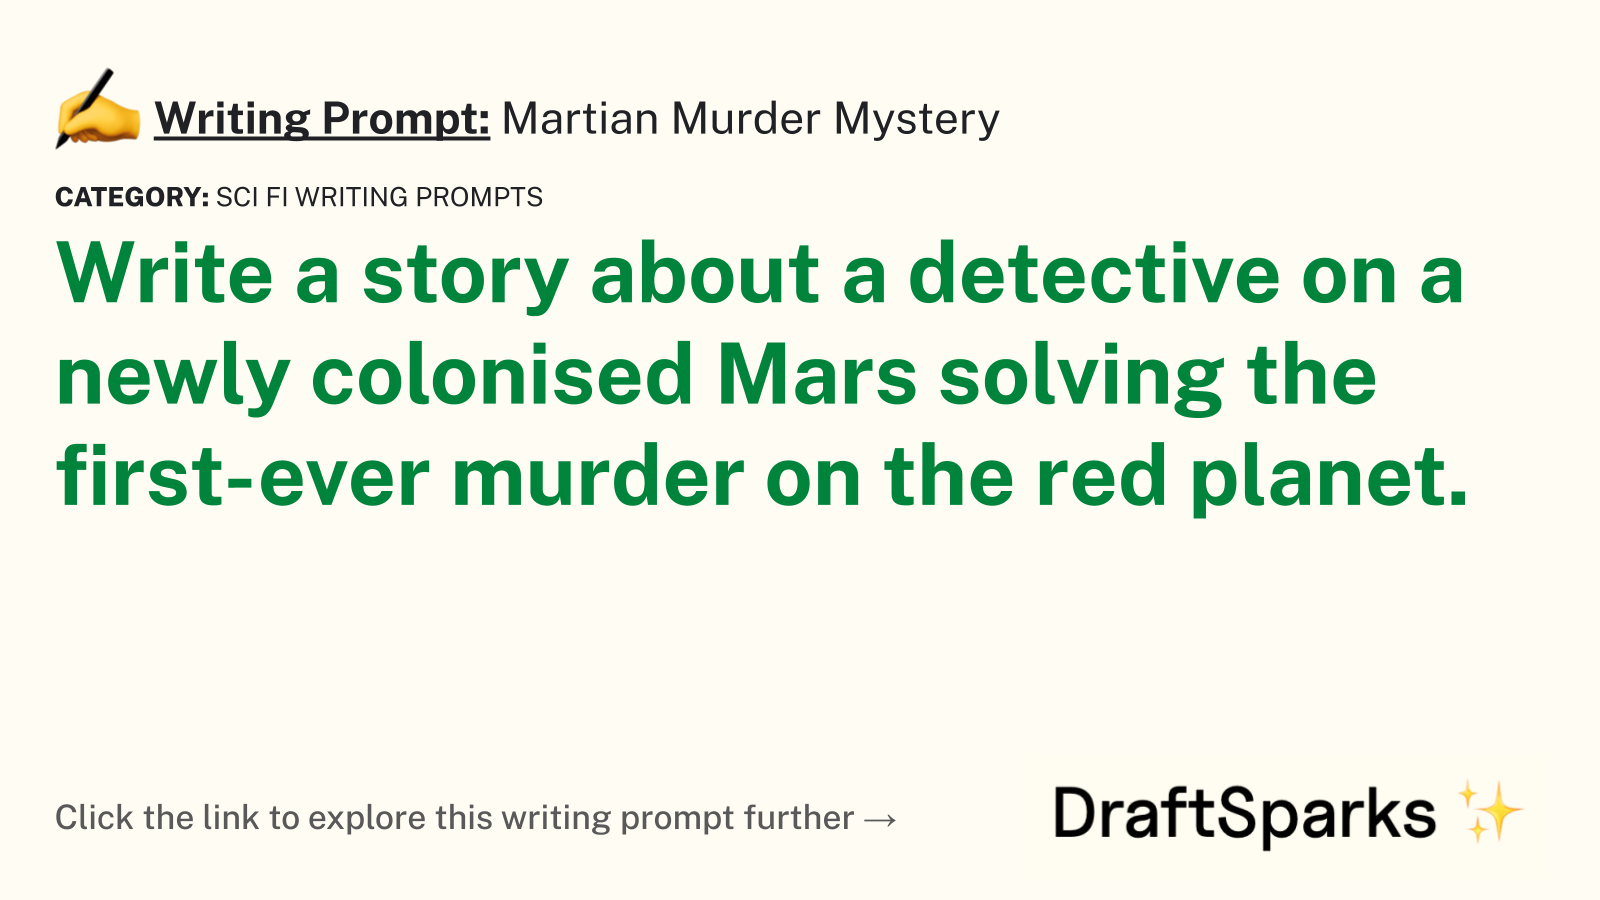 Martian Murder Mystery